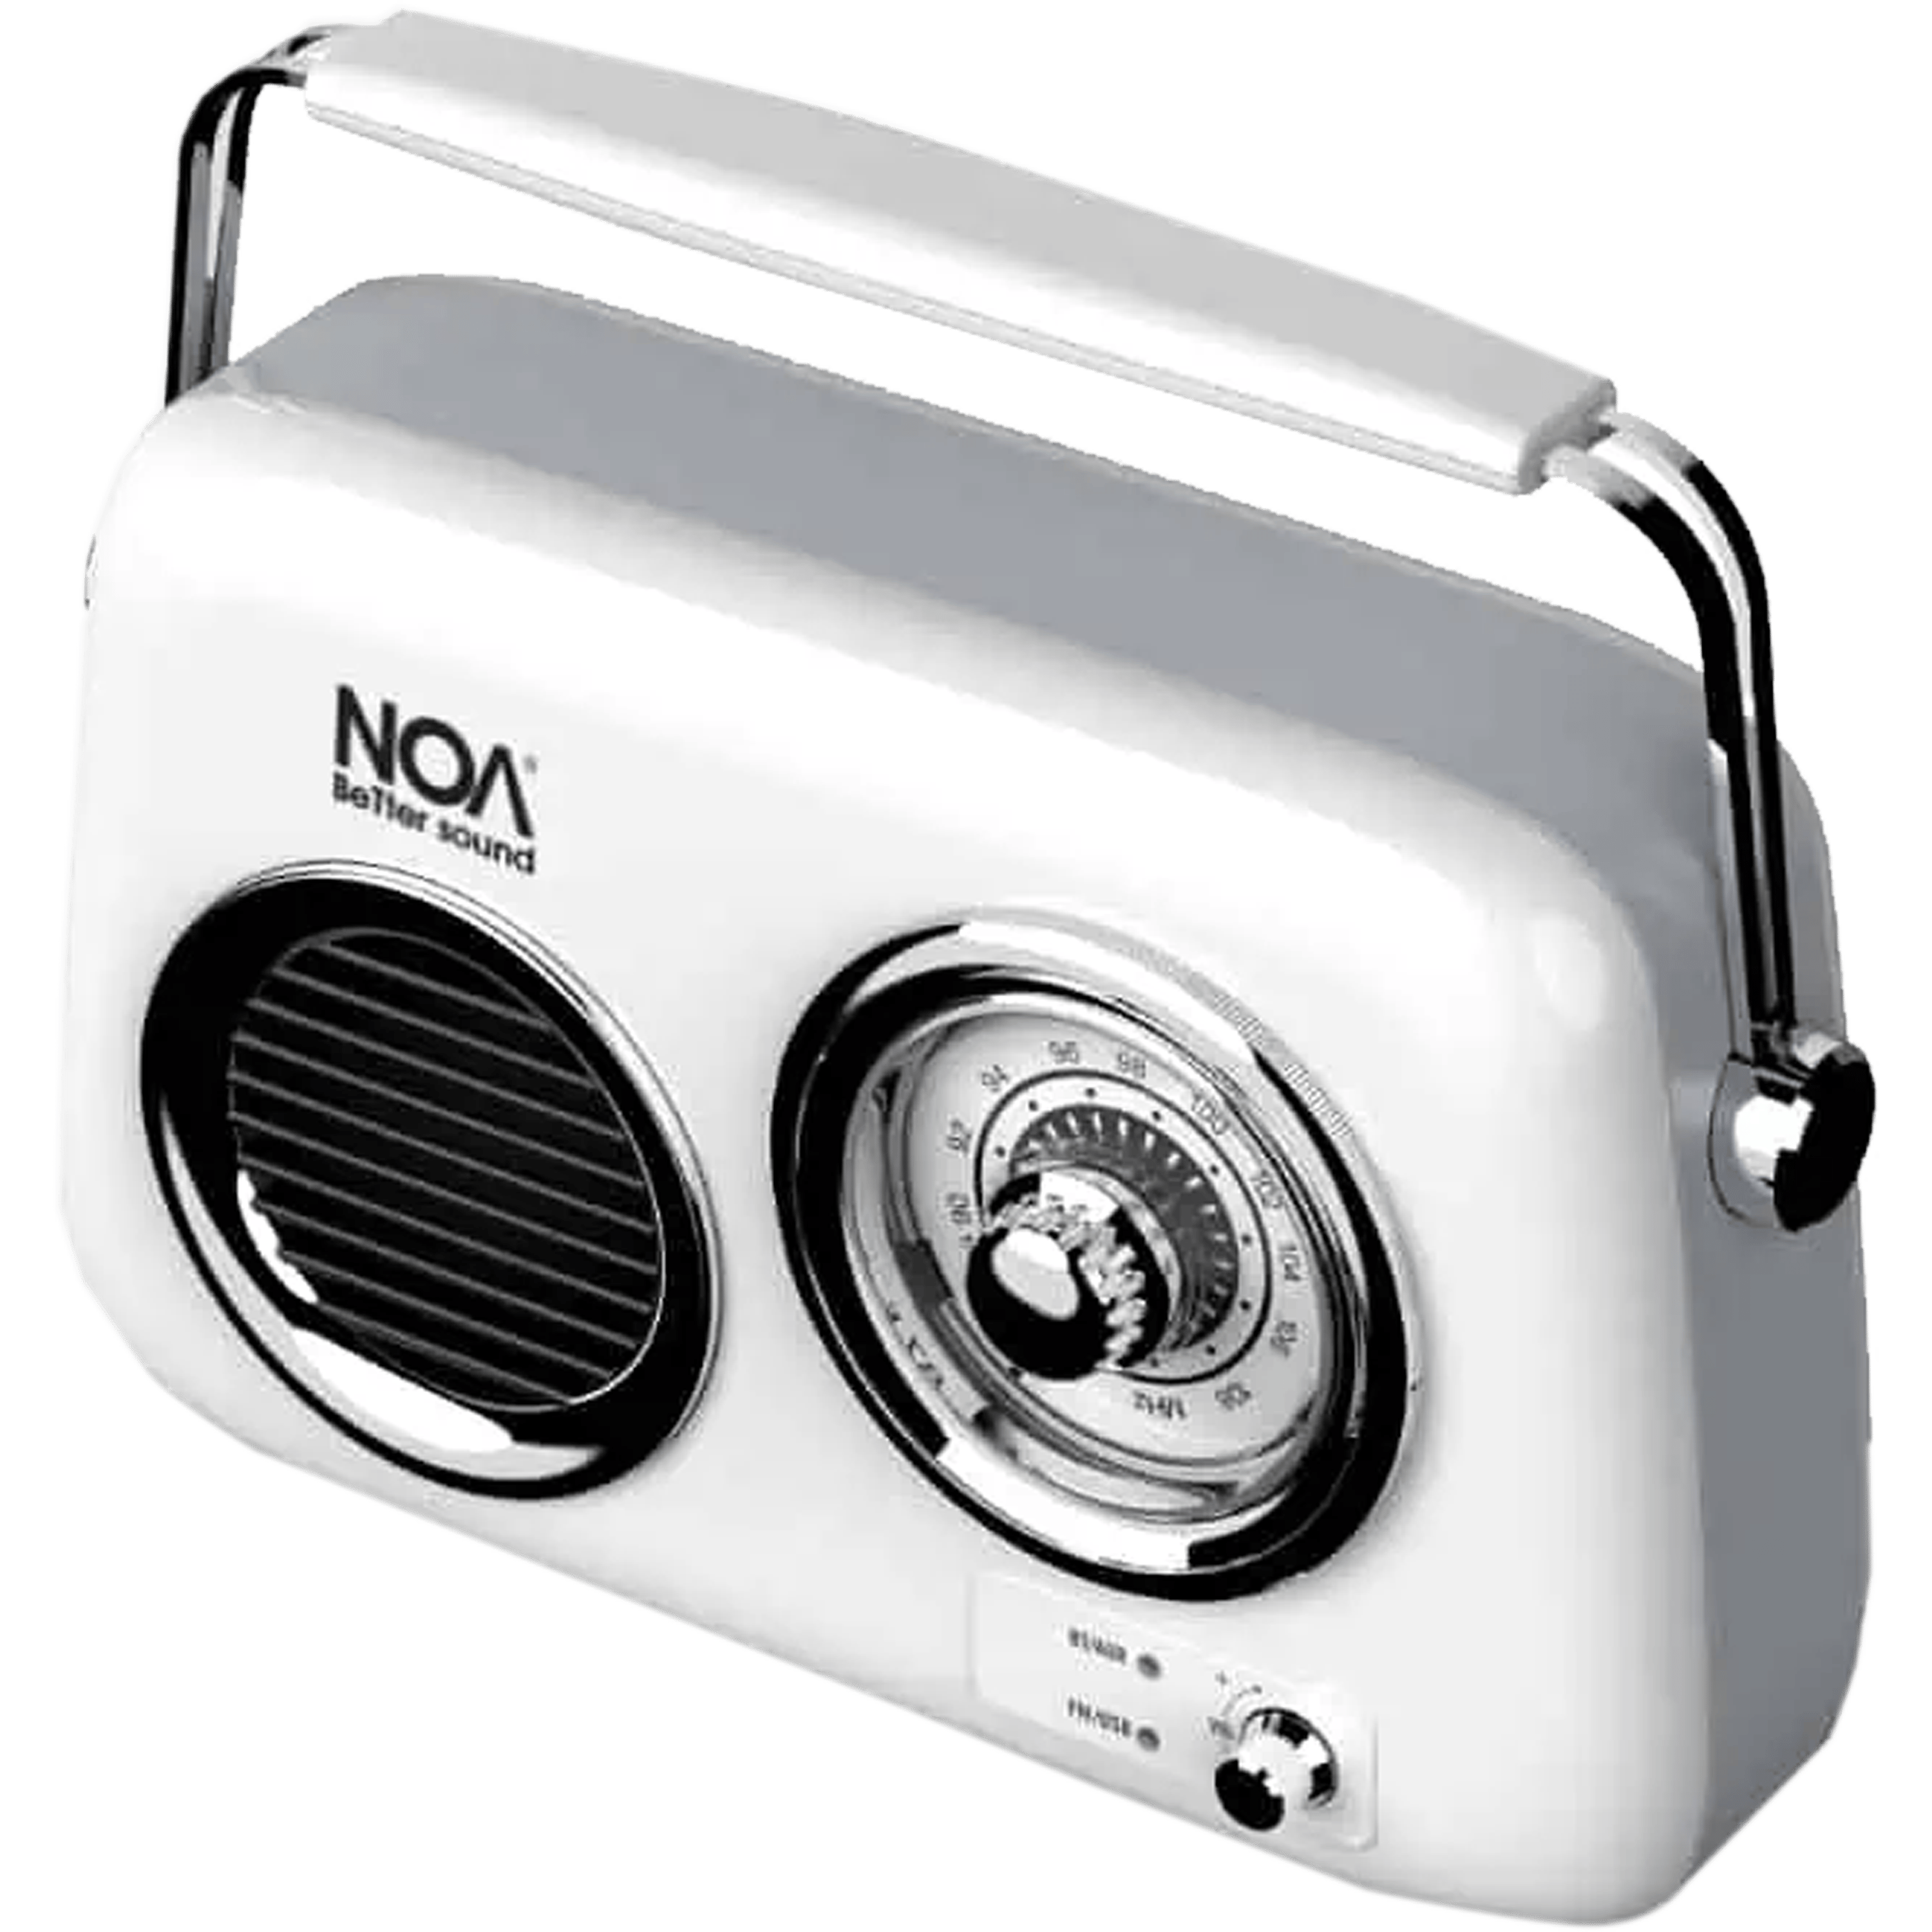 רדיו FM רטרו מעוצב + NOA Retro White Bluetooth - צבע לבן